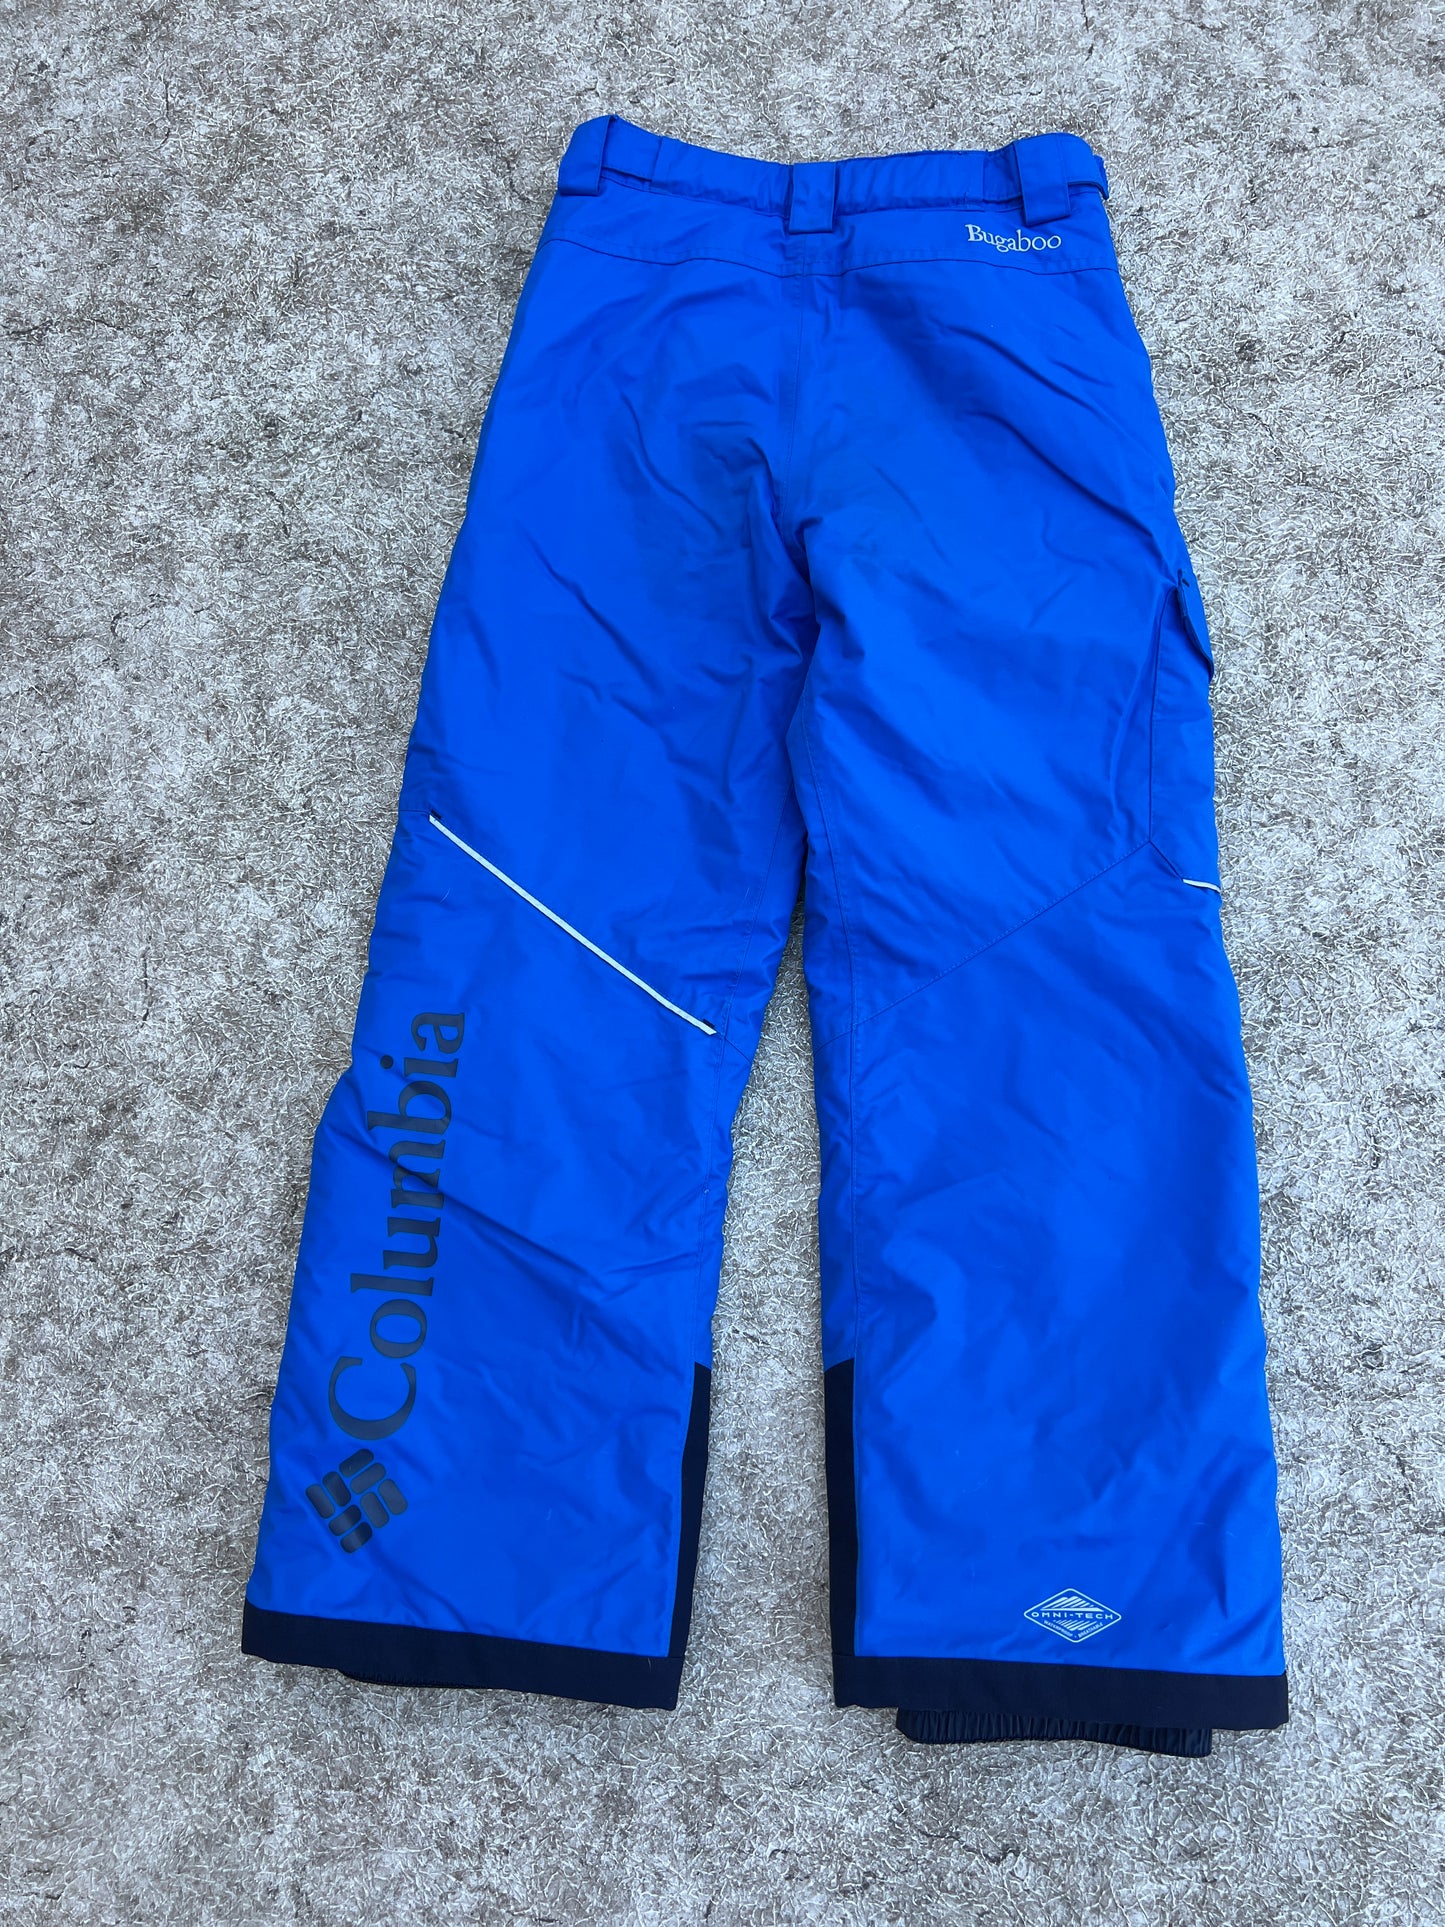 Snow Pants Child Size 8-10 Columbia Adjustable Waist Blue Excellent